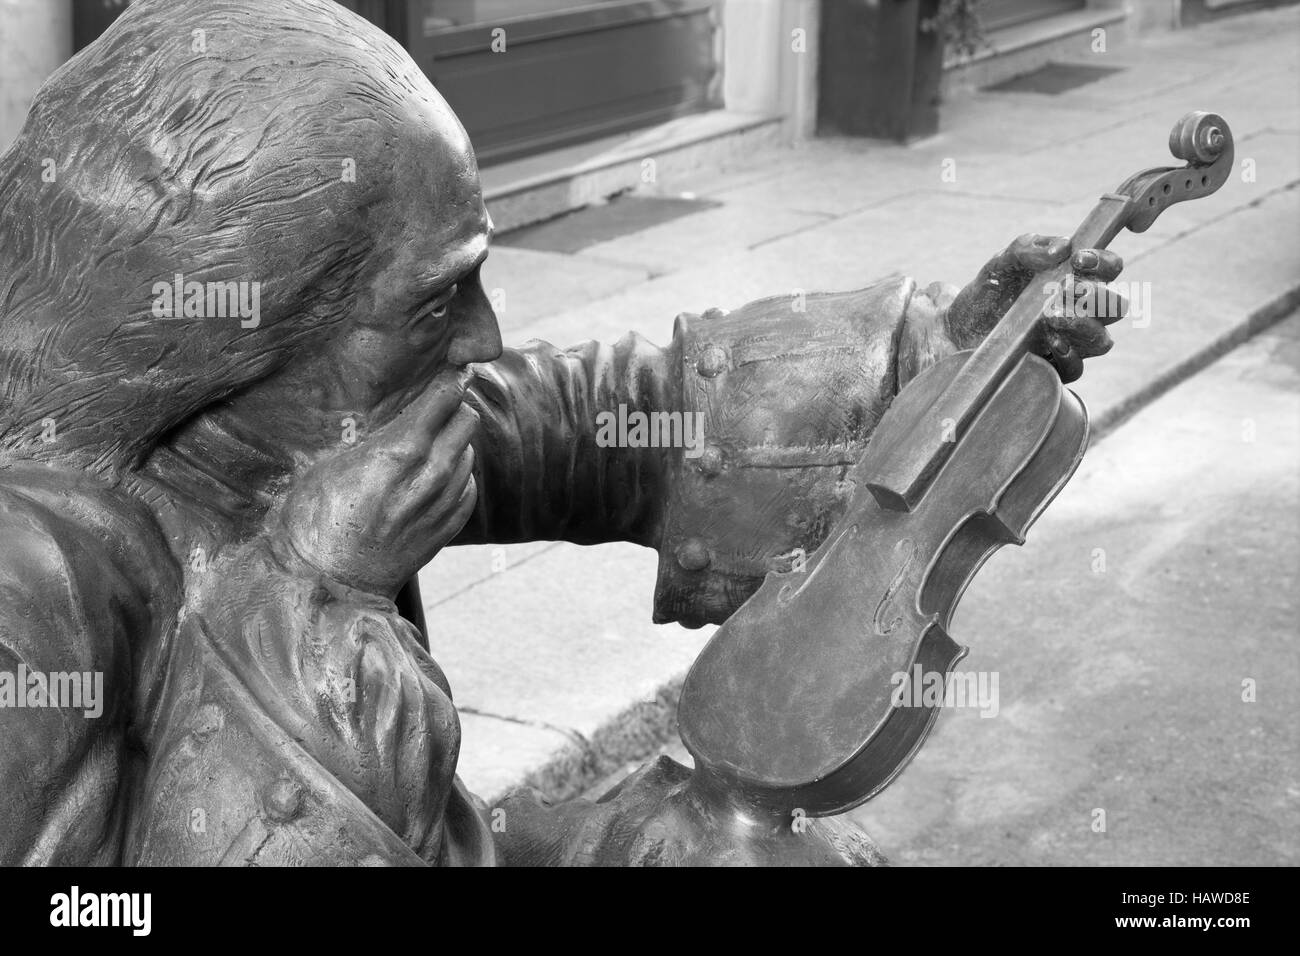 CREMONA, Italia - 24 Maggio 2016: il dettaglio della statua di bronzo di Antonio Stradivari davanti alla sua casa natale di artista sconosciuto del 21. cento. Foto Stock